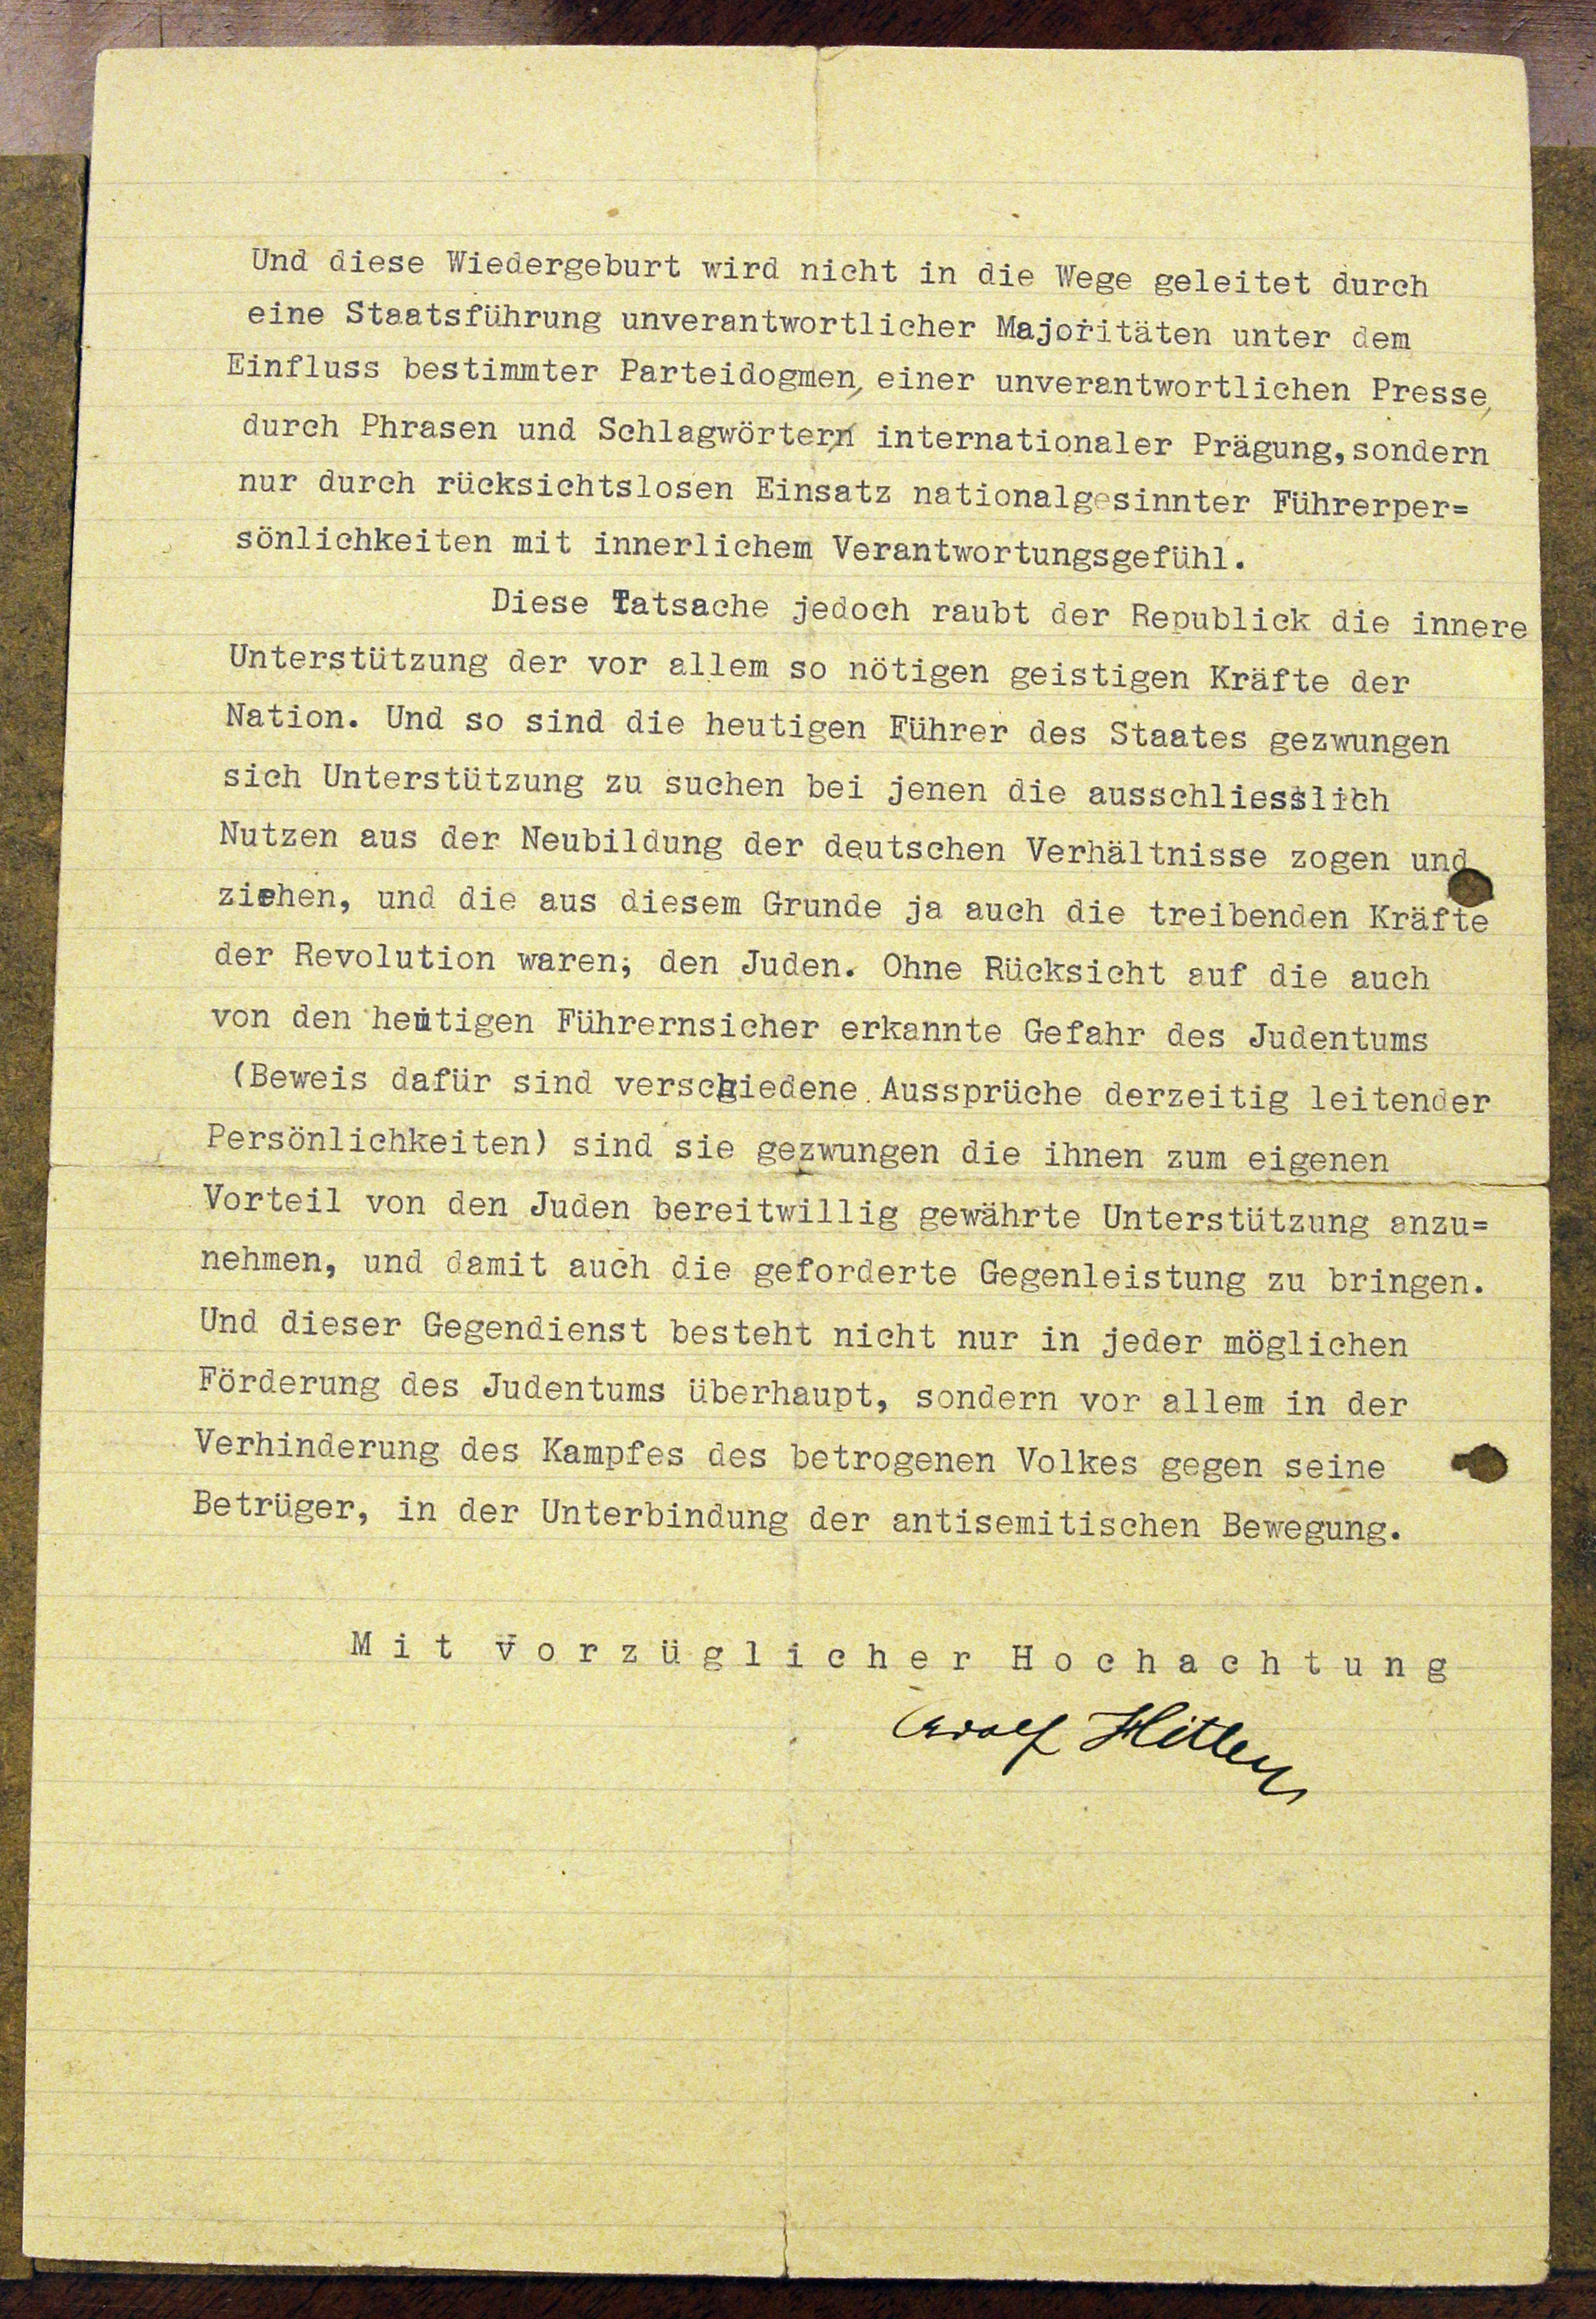 Här är ett av Hitlers första brev där han uttrycker sin hat mot judar.